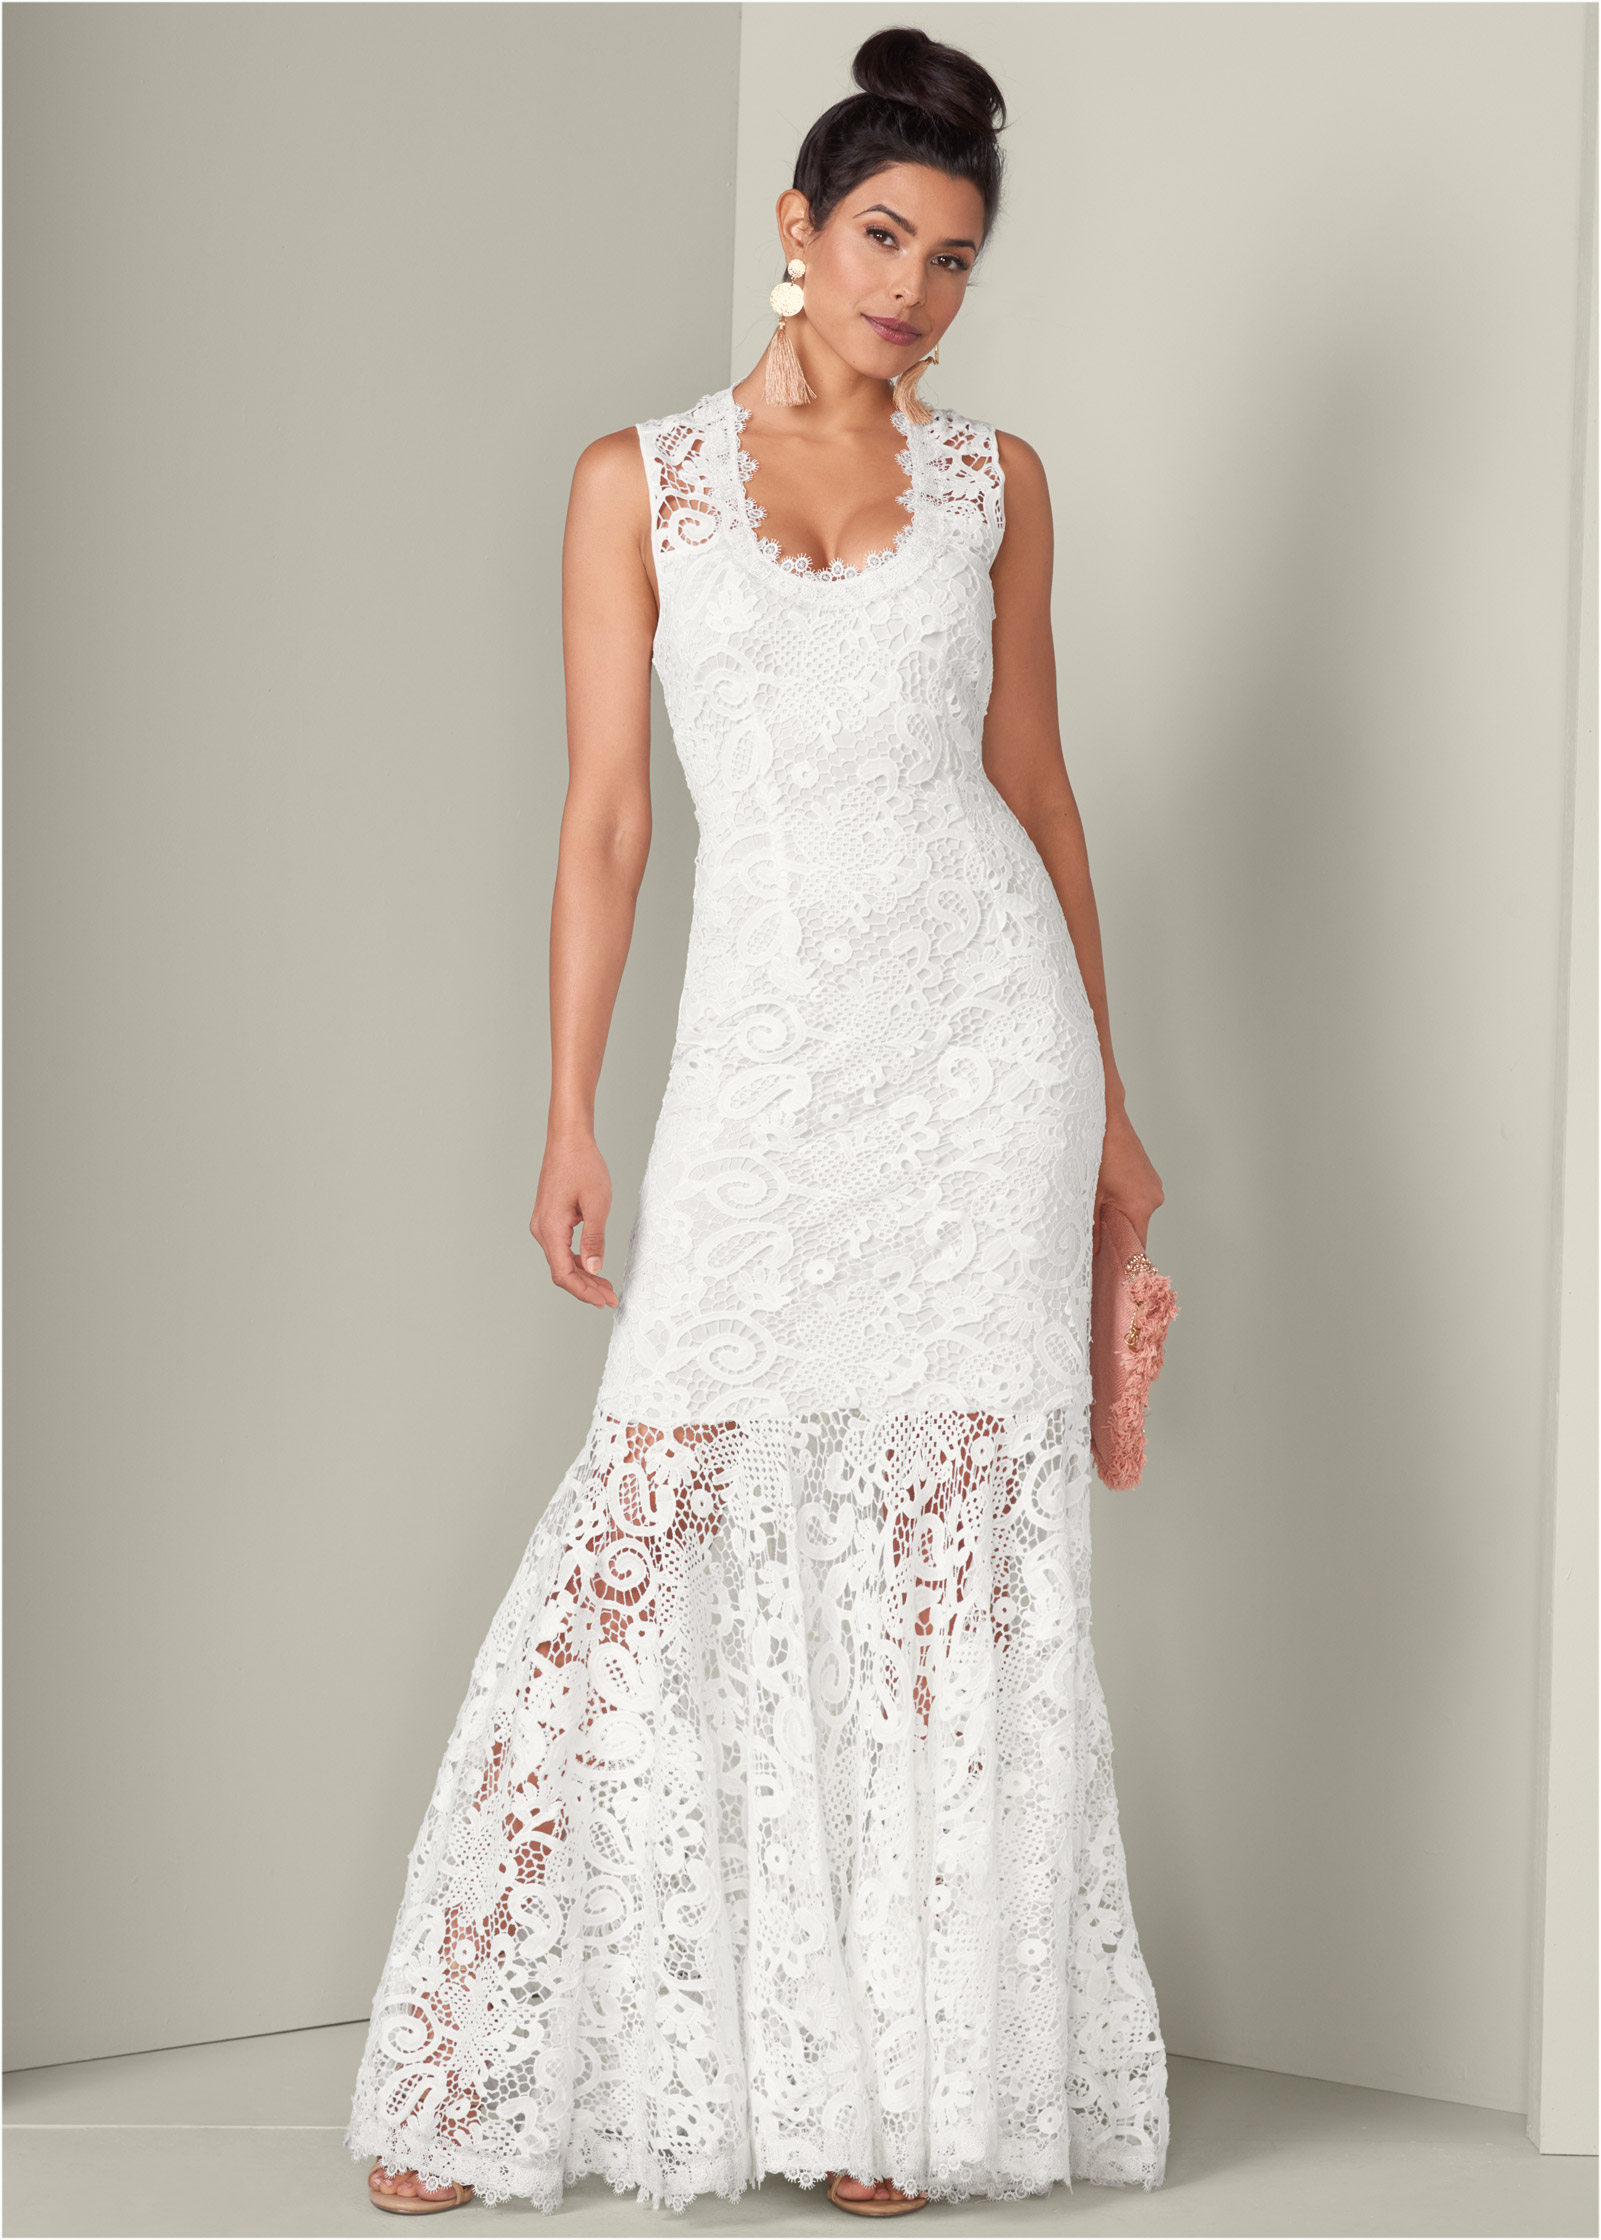 venus white crochet dress